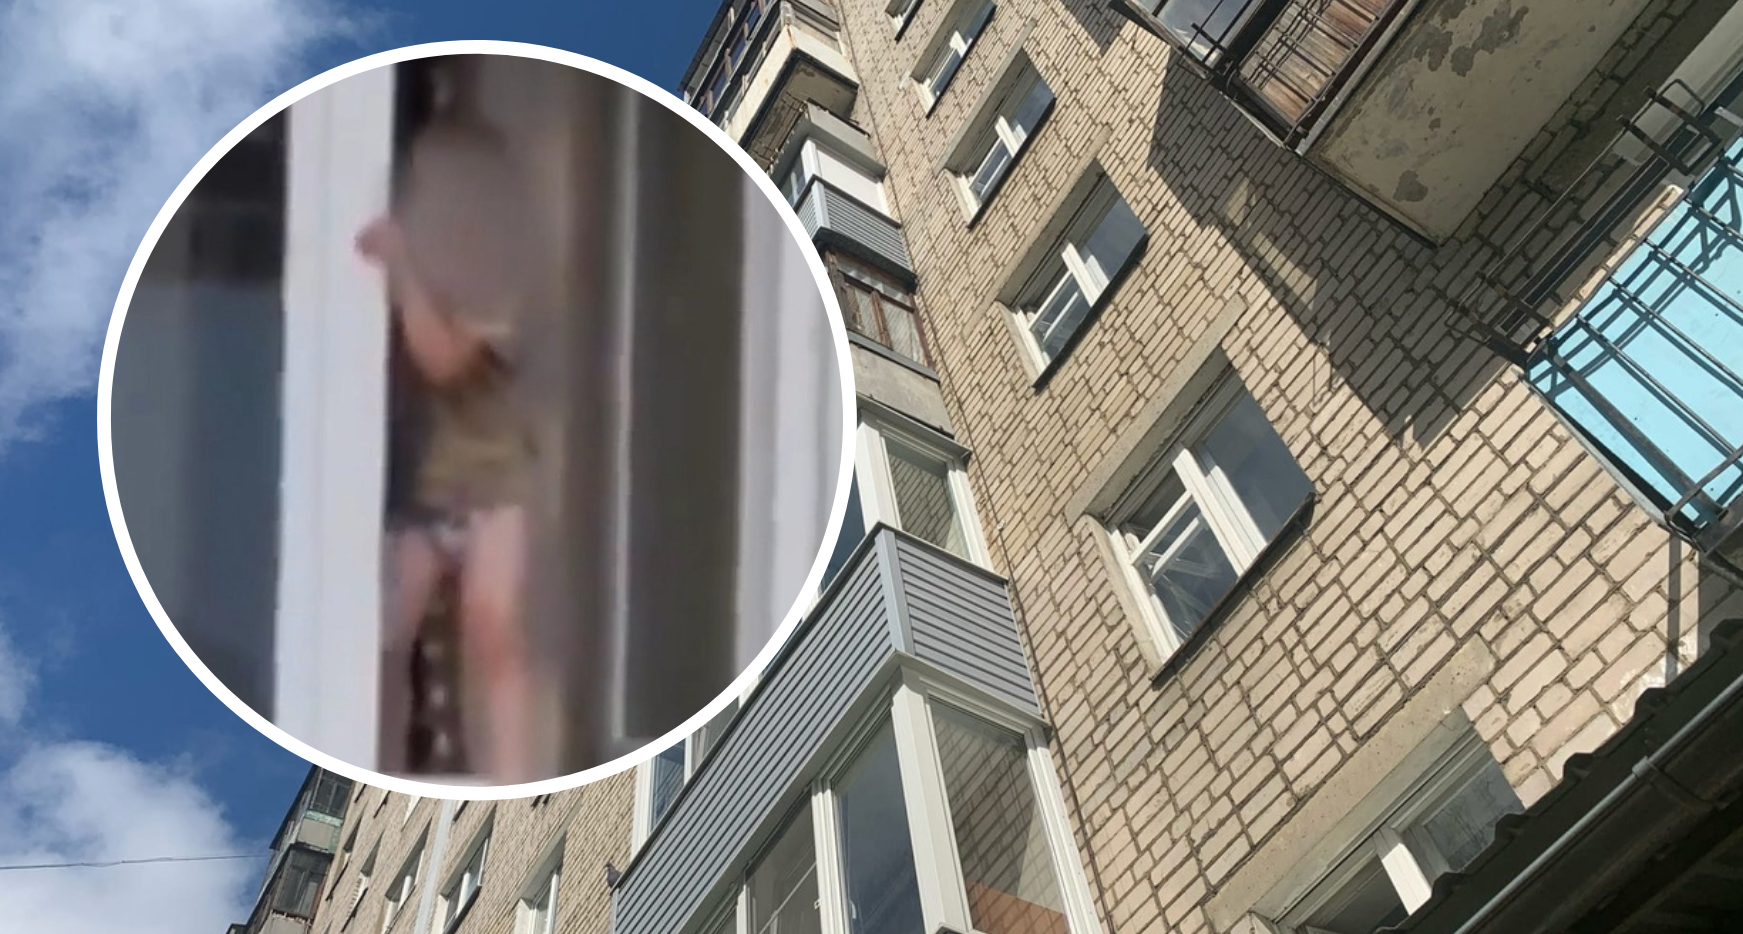 Последний раз трехлетку видели в окне 8-го этажа: подробности ЧП в Заволжском районе